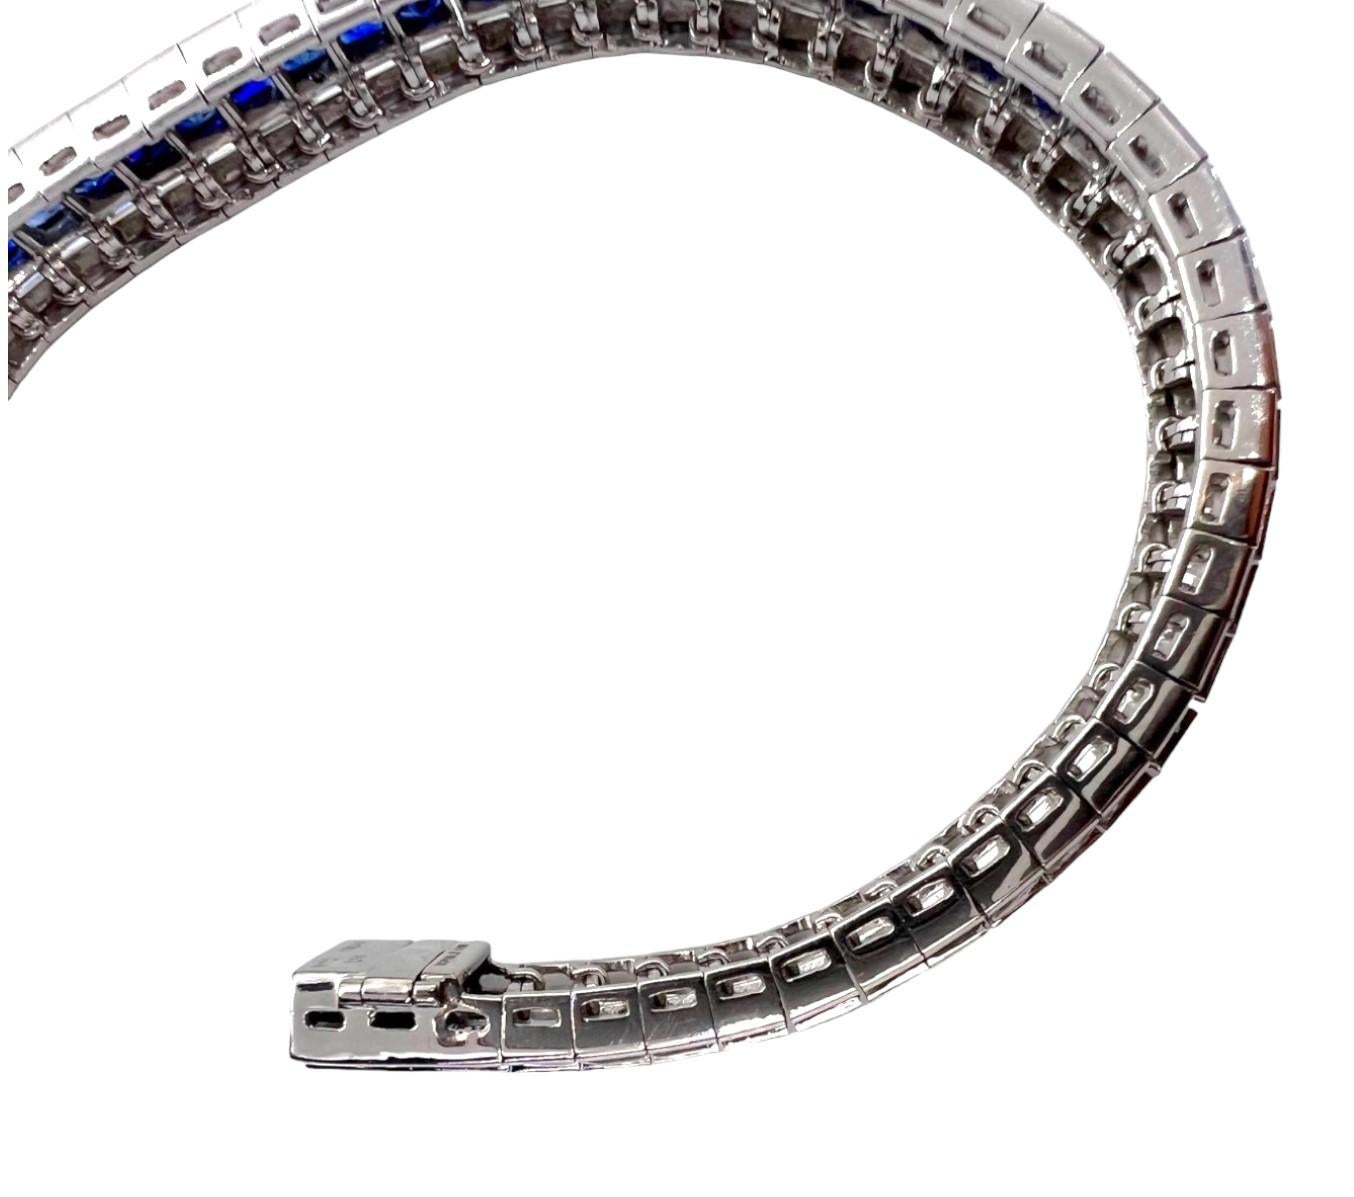 Bracelets Sophia D avec 12,83 carats de saphirs bleus et 7,36 carats de diamants sur une monture en platine.

La longueur du bracelet est d'environ 7 pouces et sa largeur de 0,5 pouce. 

Sophia D by Joseph Dardashti Ltd est connue dans le monde